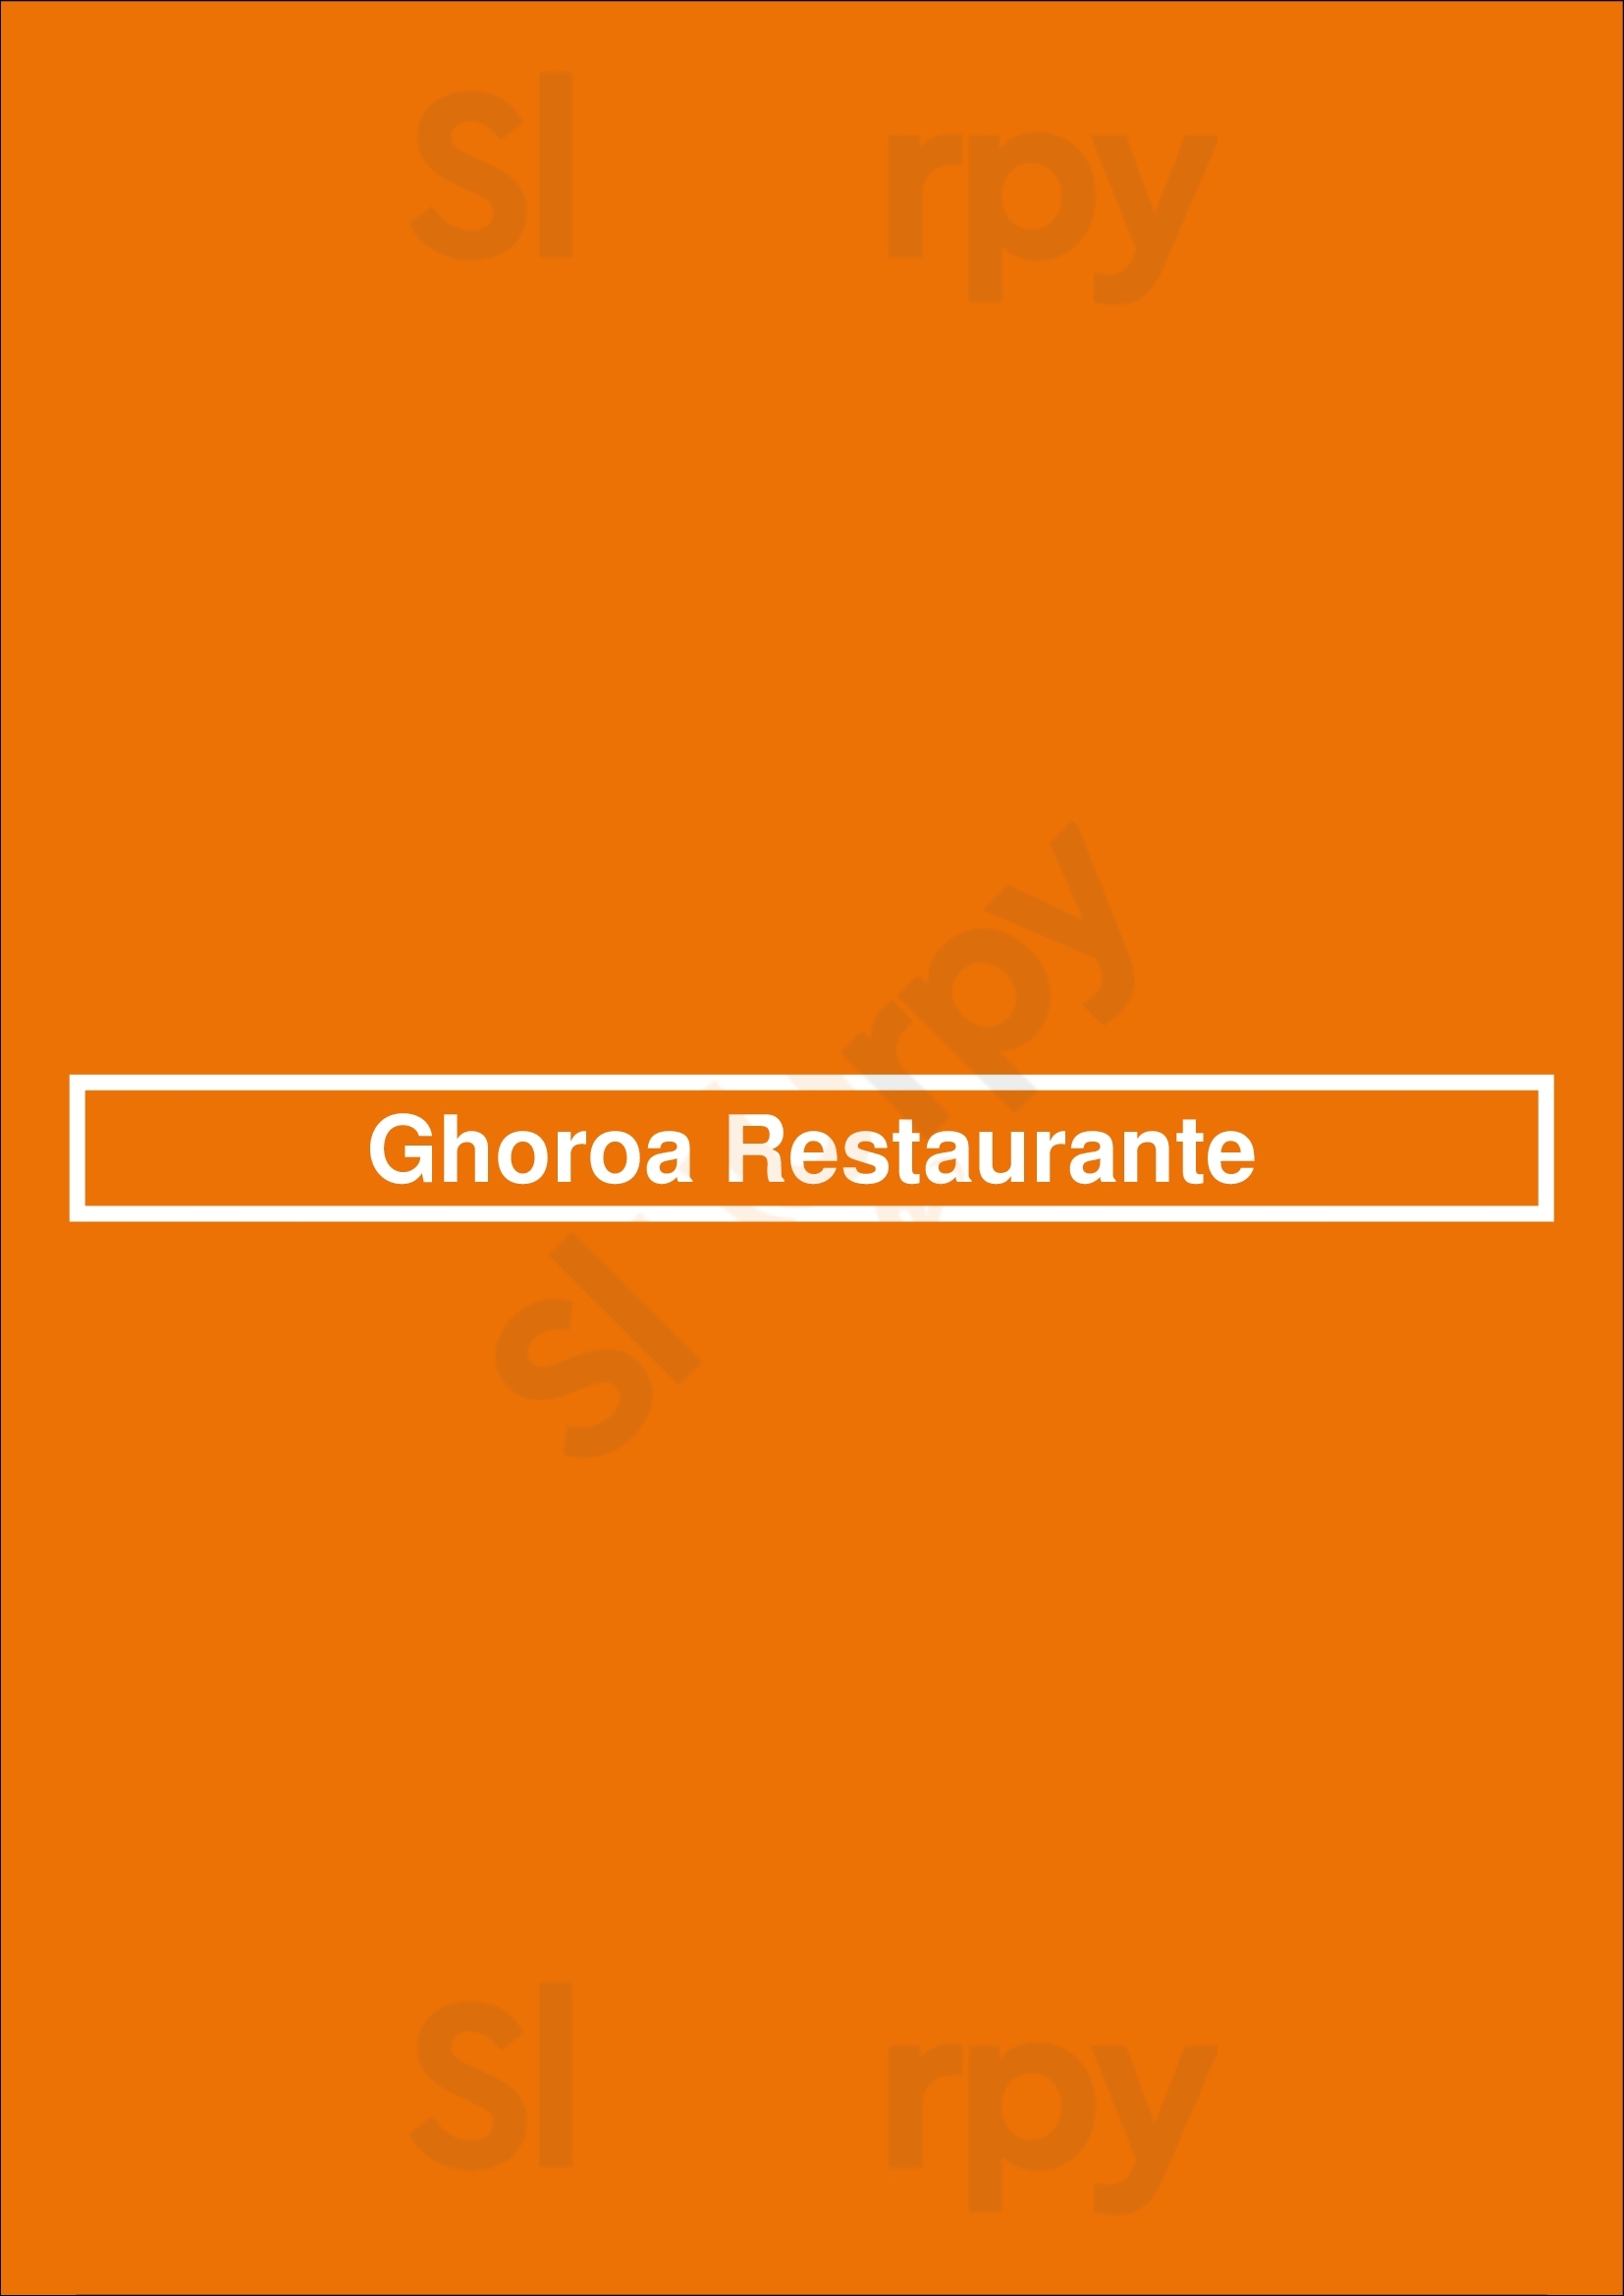 Ghoroa Restaurante Lisboa Menu - 1